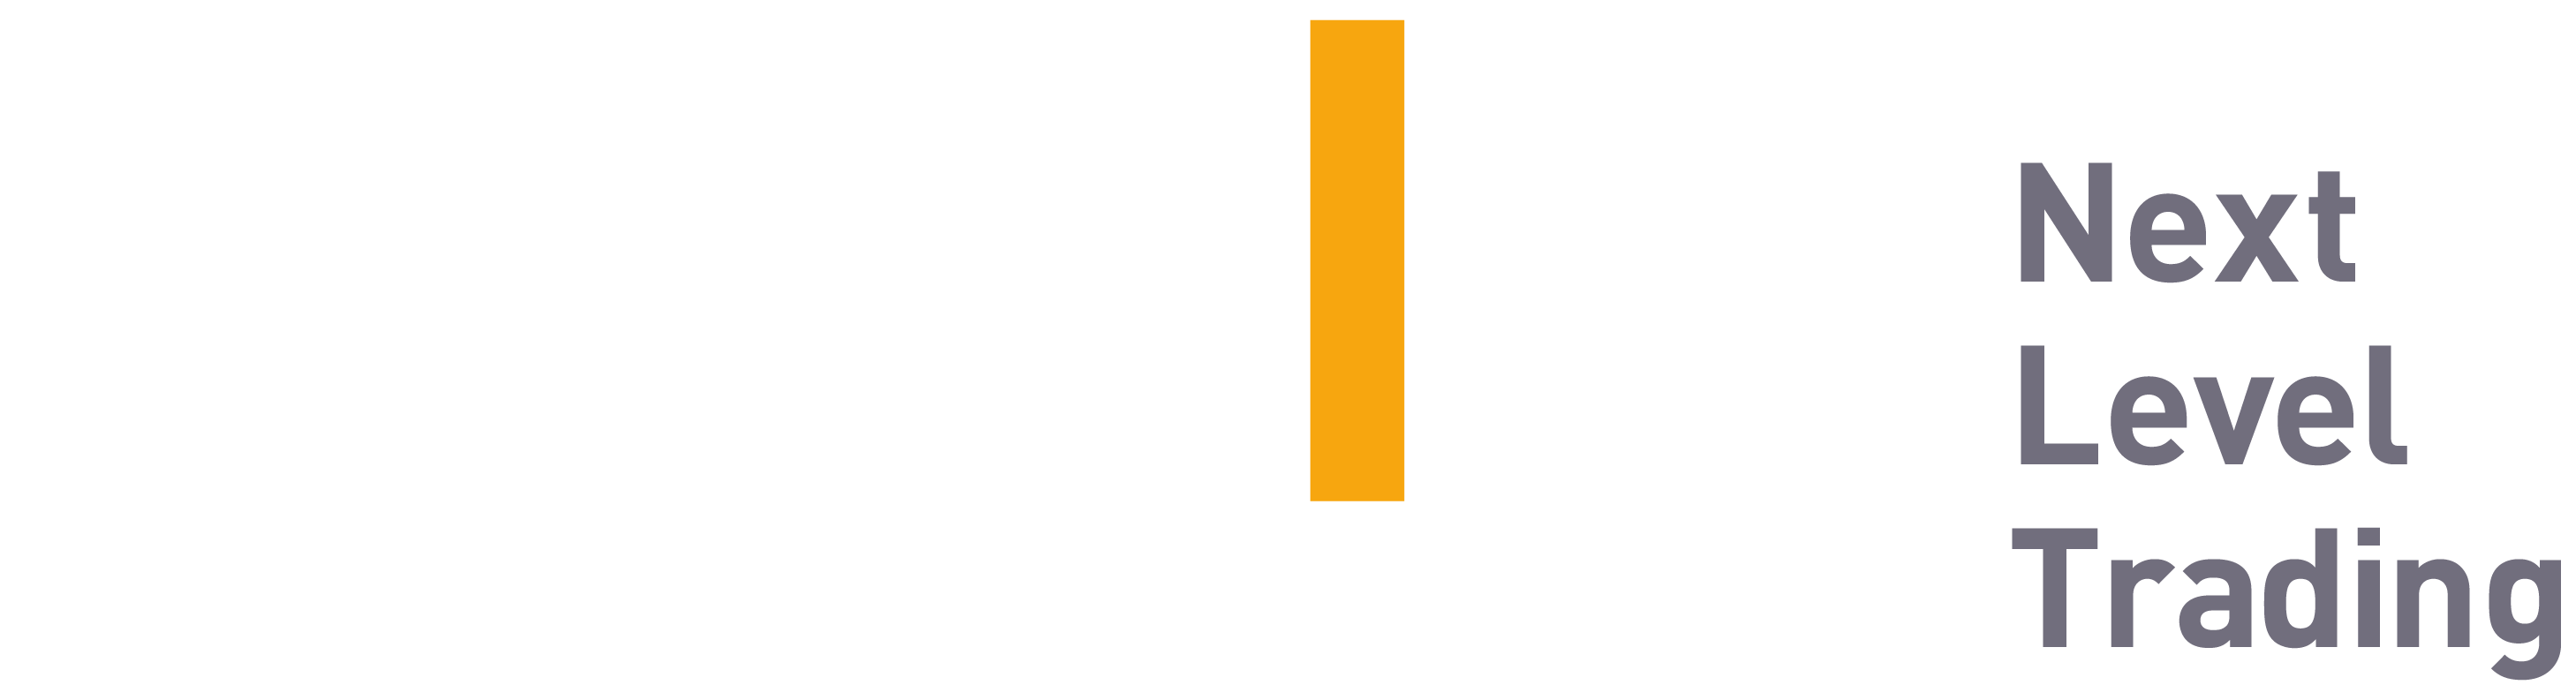 Bybit-Logo-2021-02